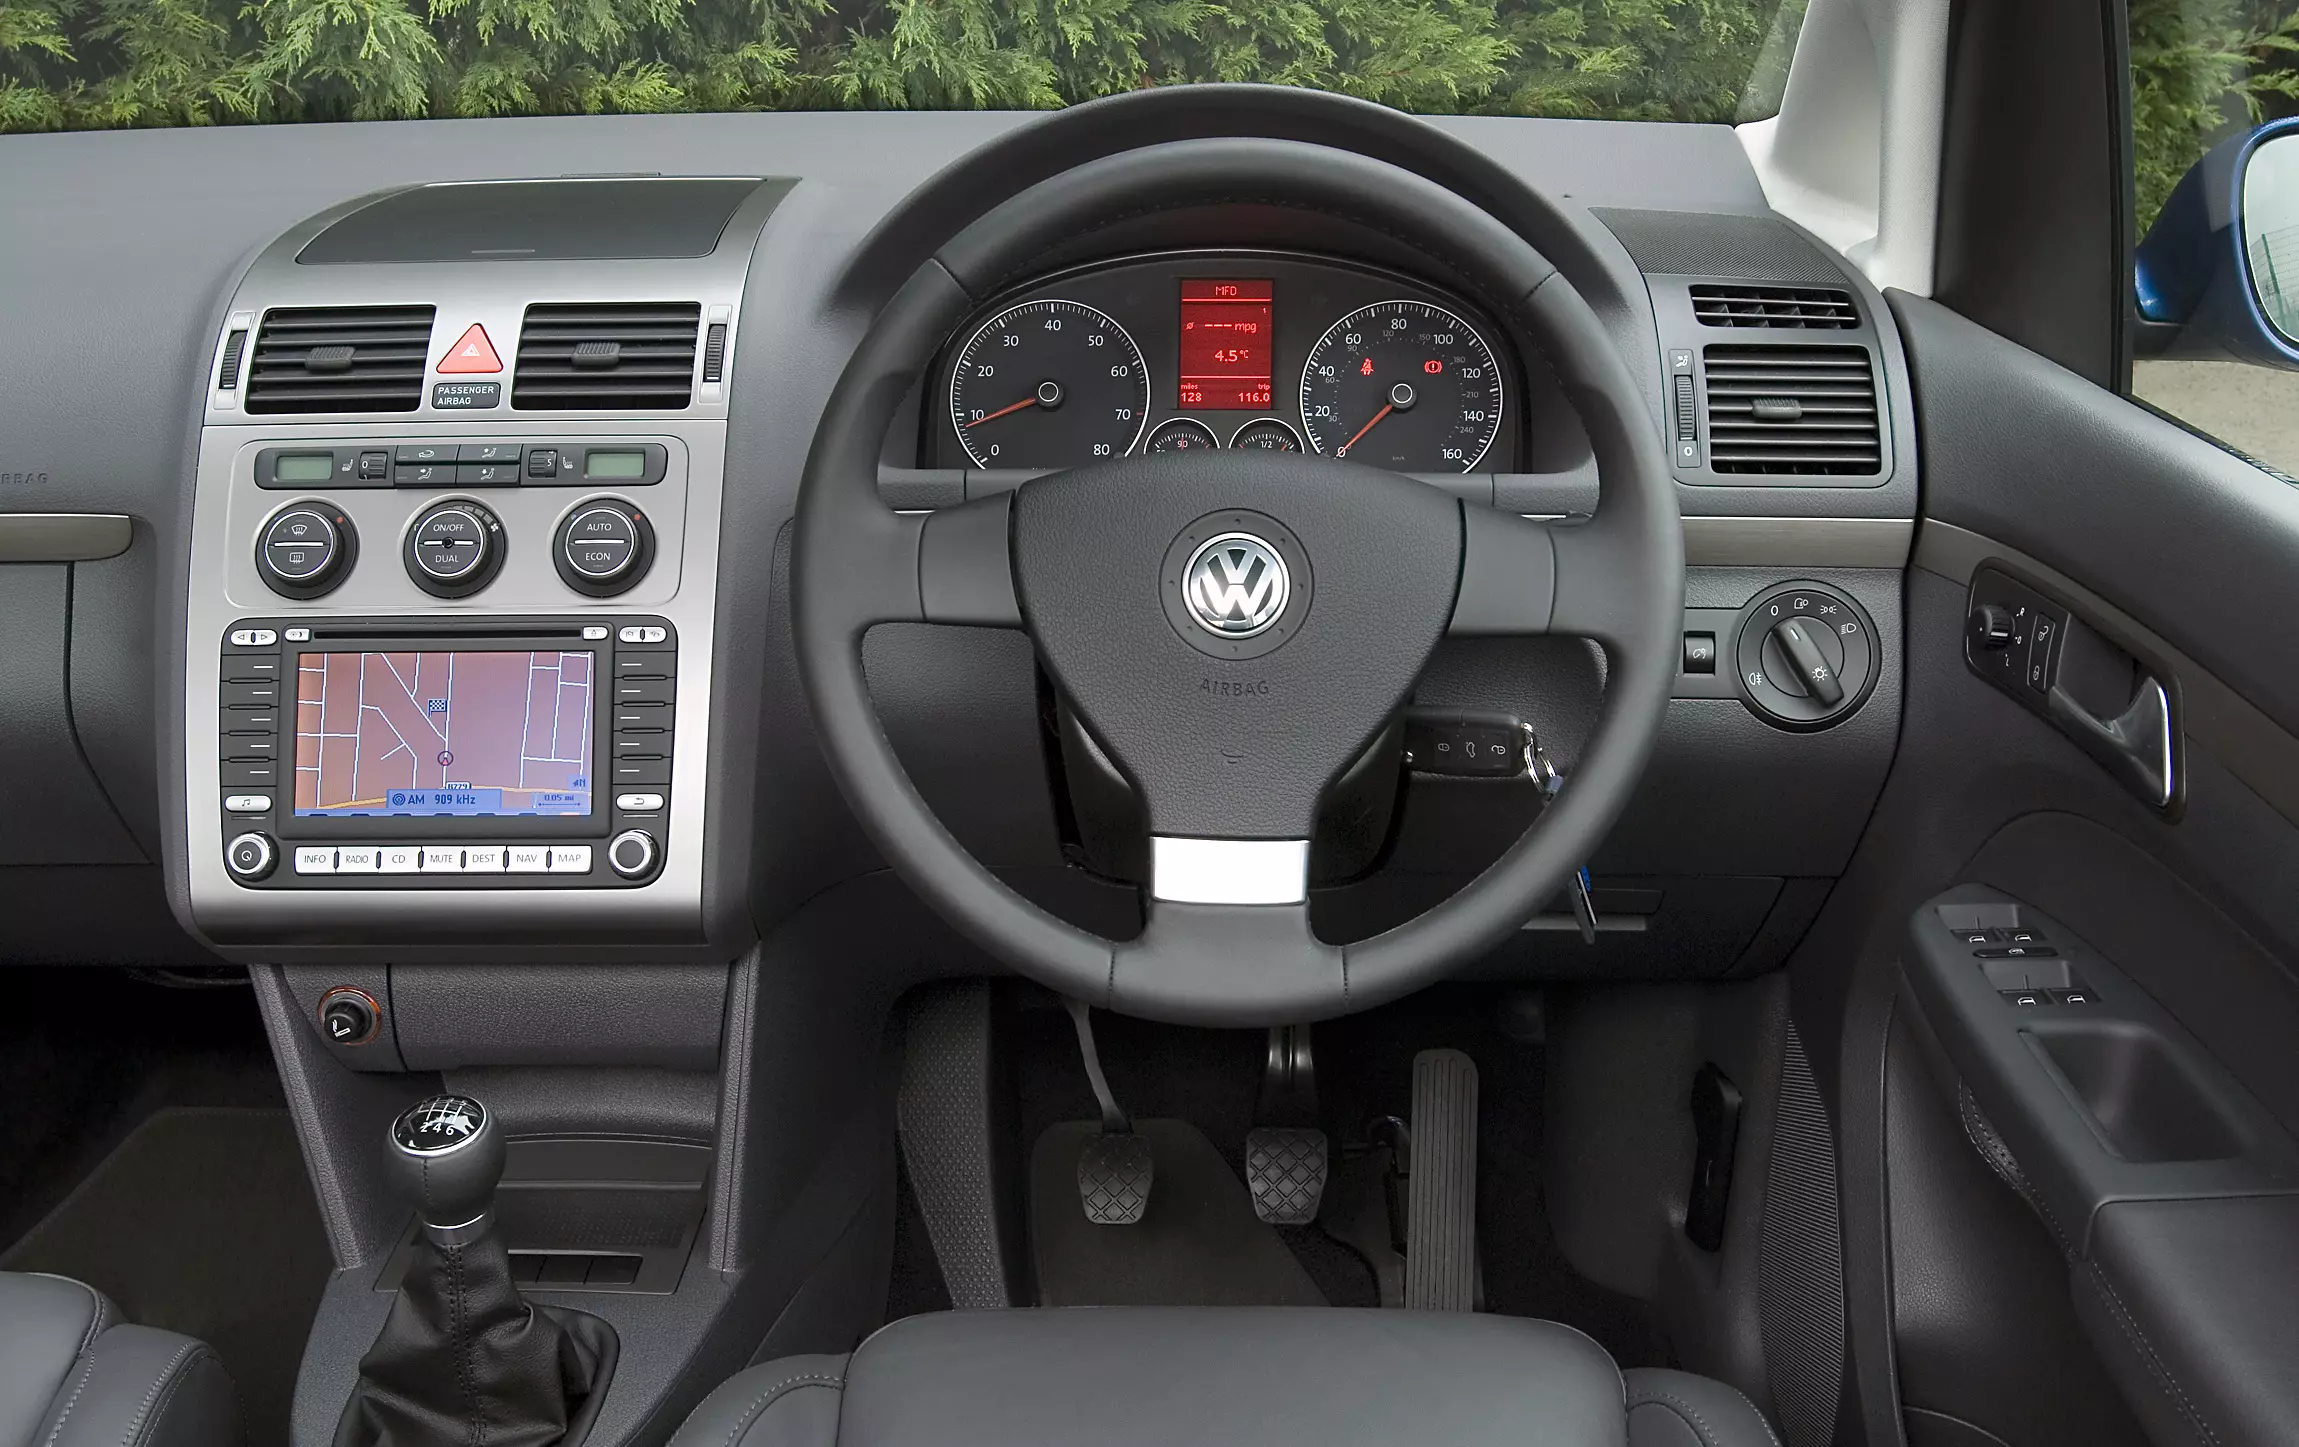 VW Touran Mk1 common problems (2003 - 2015)